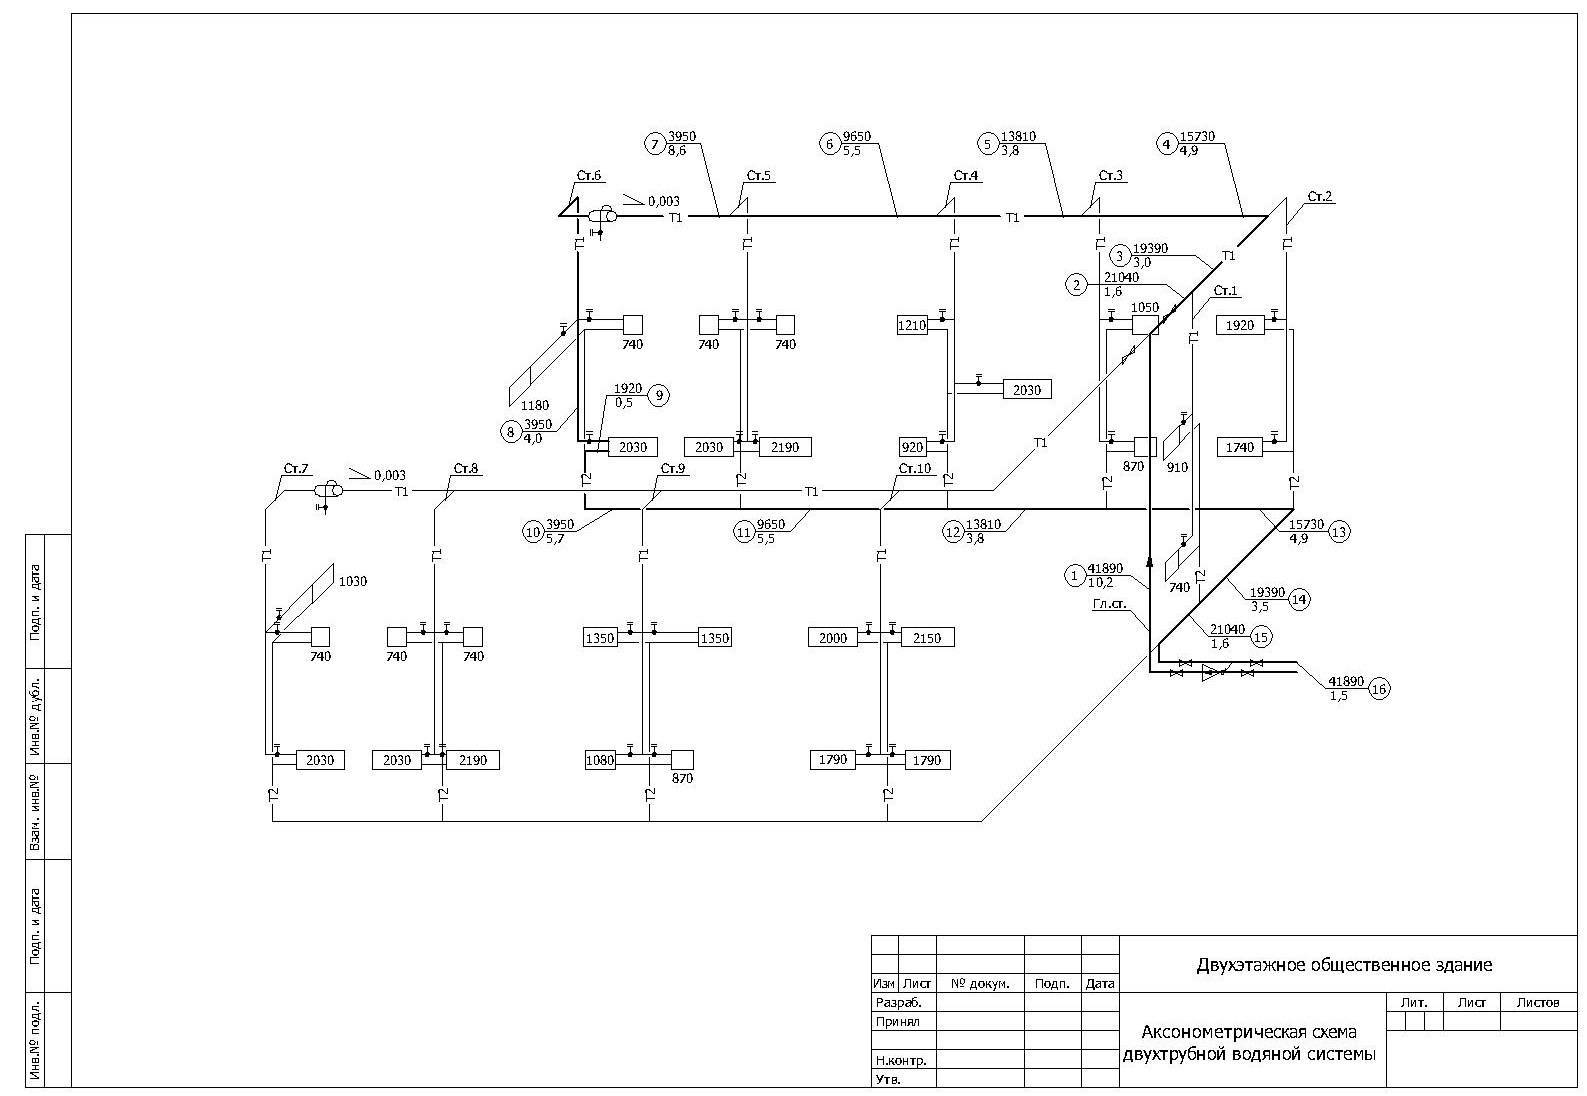 Расчет системы отопления: онлайн калькулятор, пример расчетов оборудования для загородного дома